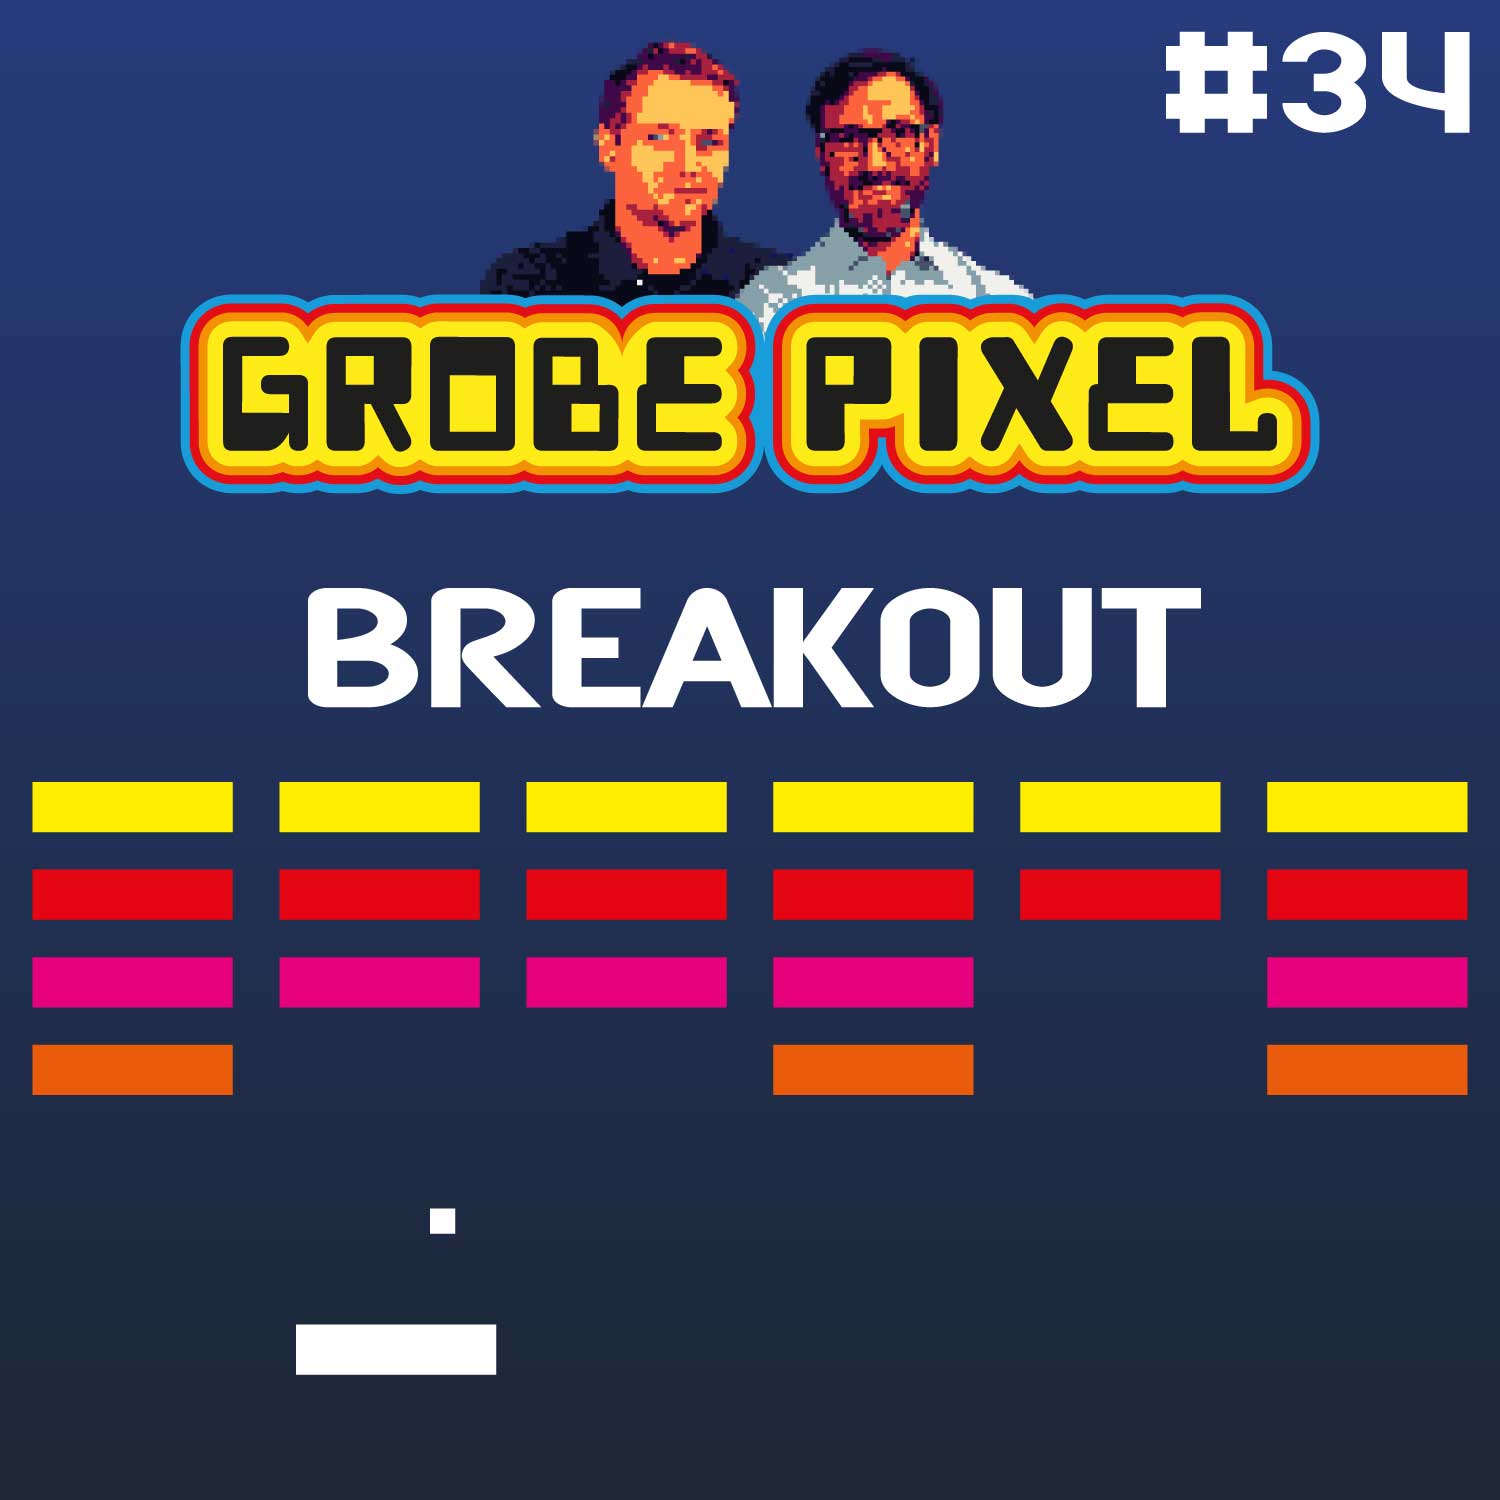 Breakout (#34)